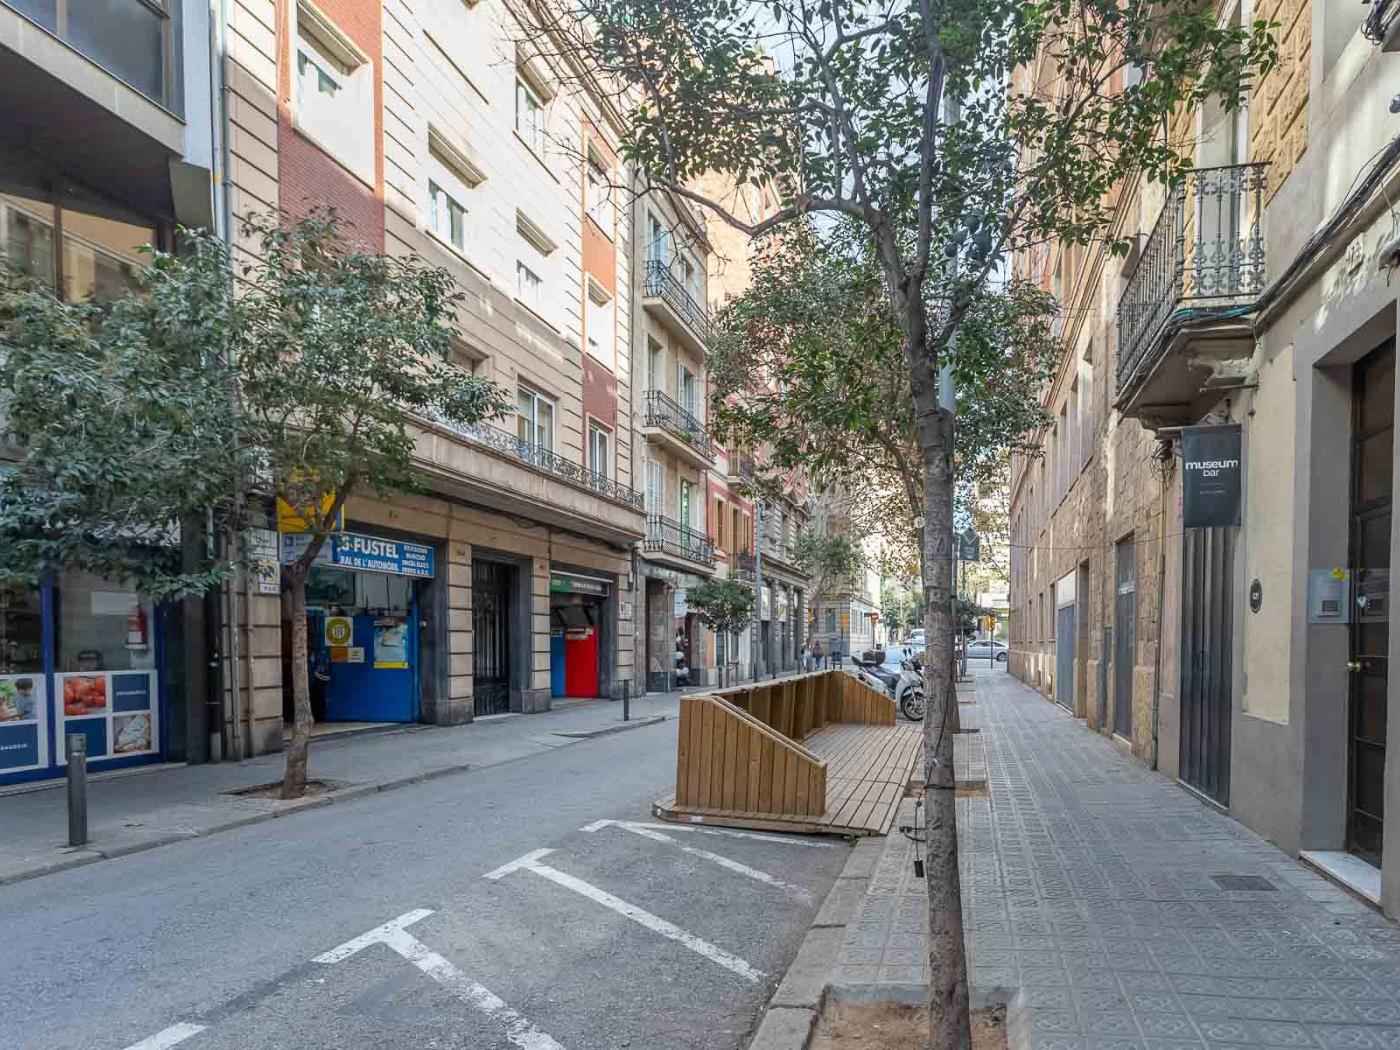 Wohnung mit gemeinsamer Terrasse/Garten ganz in der Nähe der Barraquer-Klinik - My Space Barcelona Appartementen